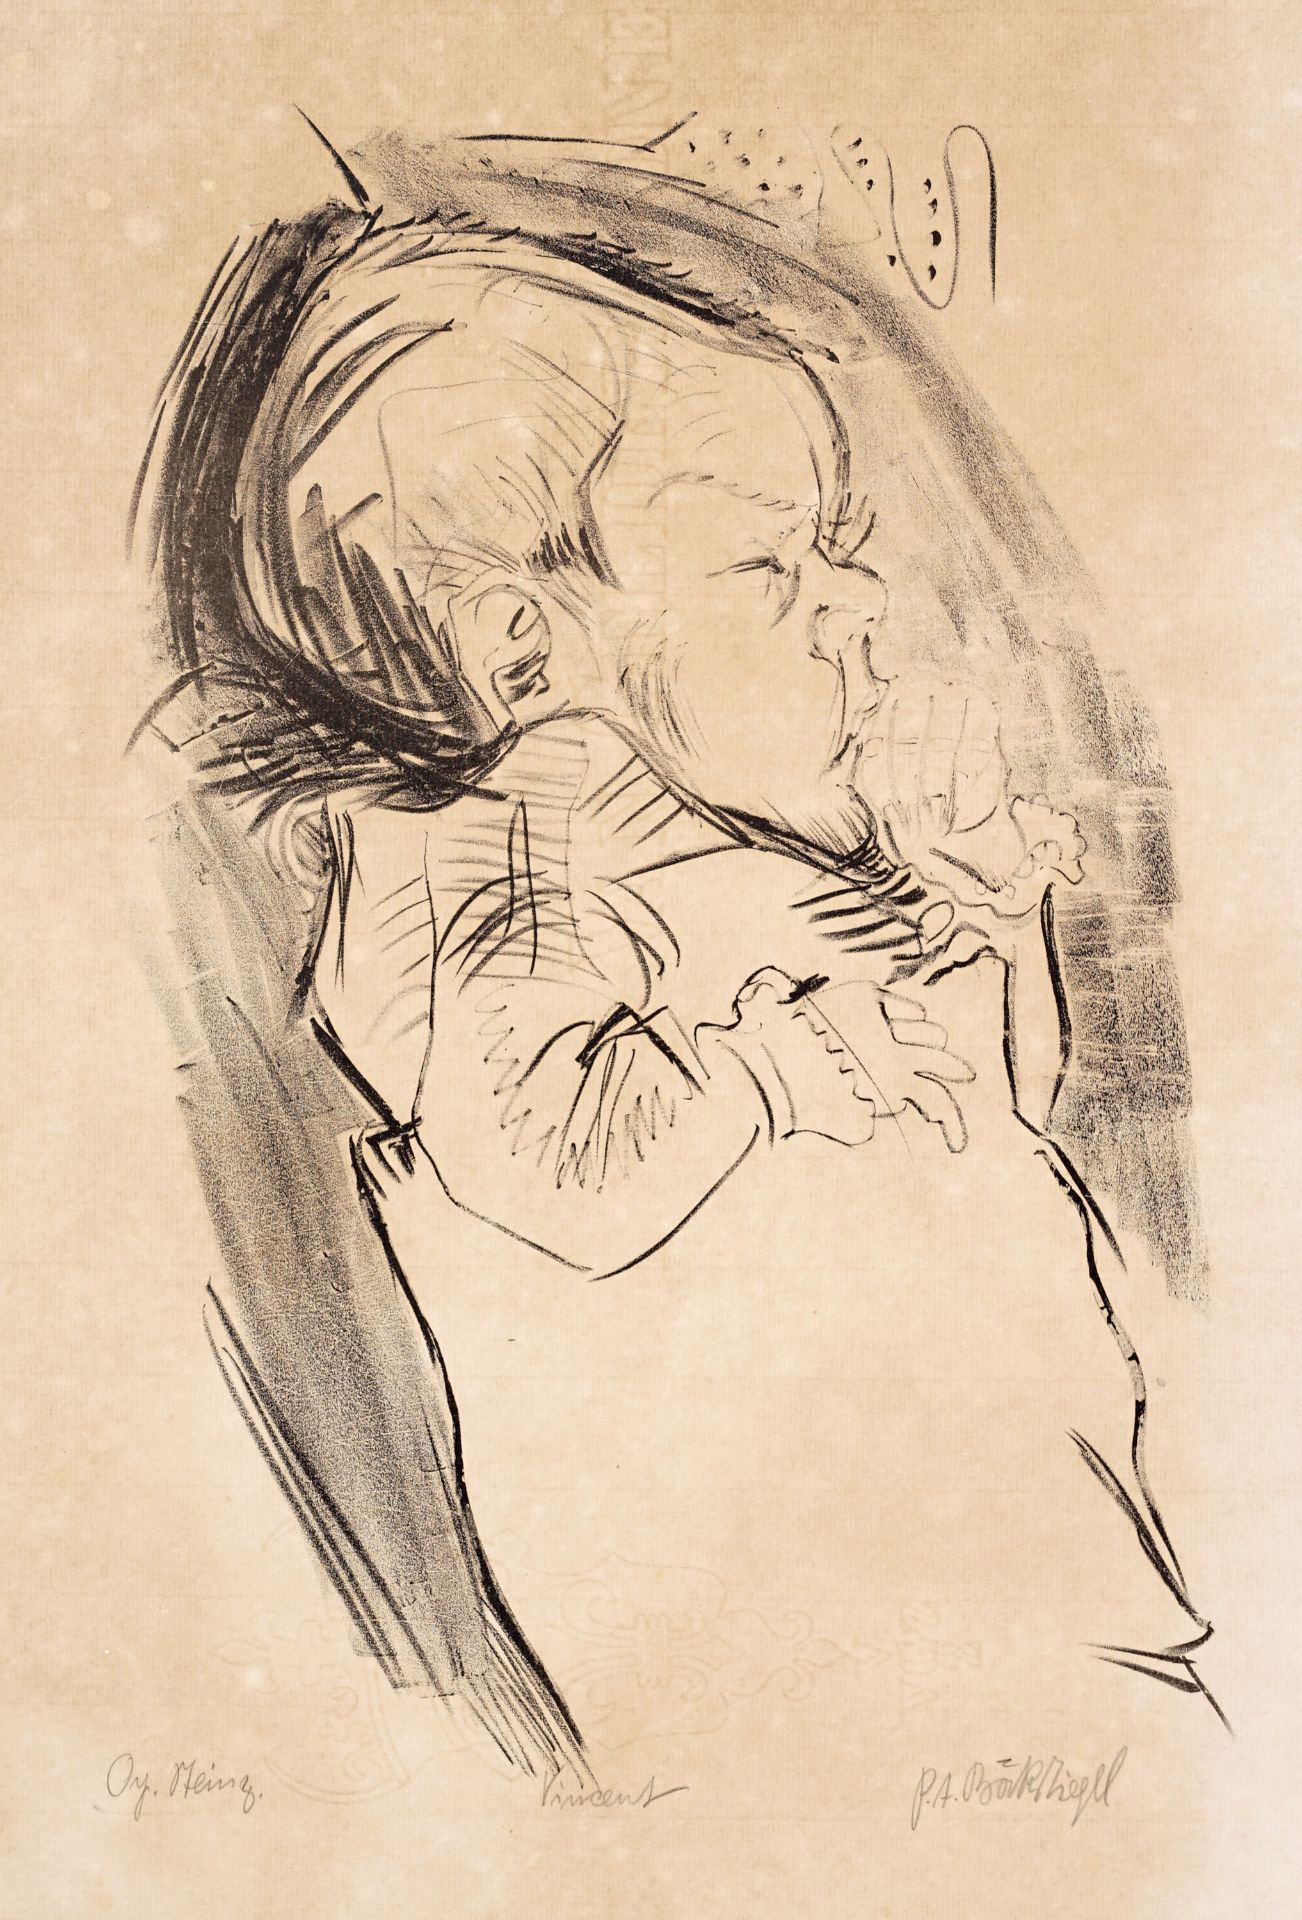 Peter August Böckstiegel "Vincent". 1925.